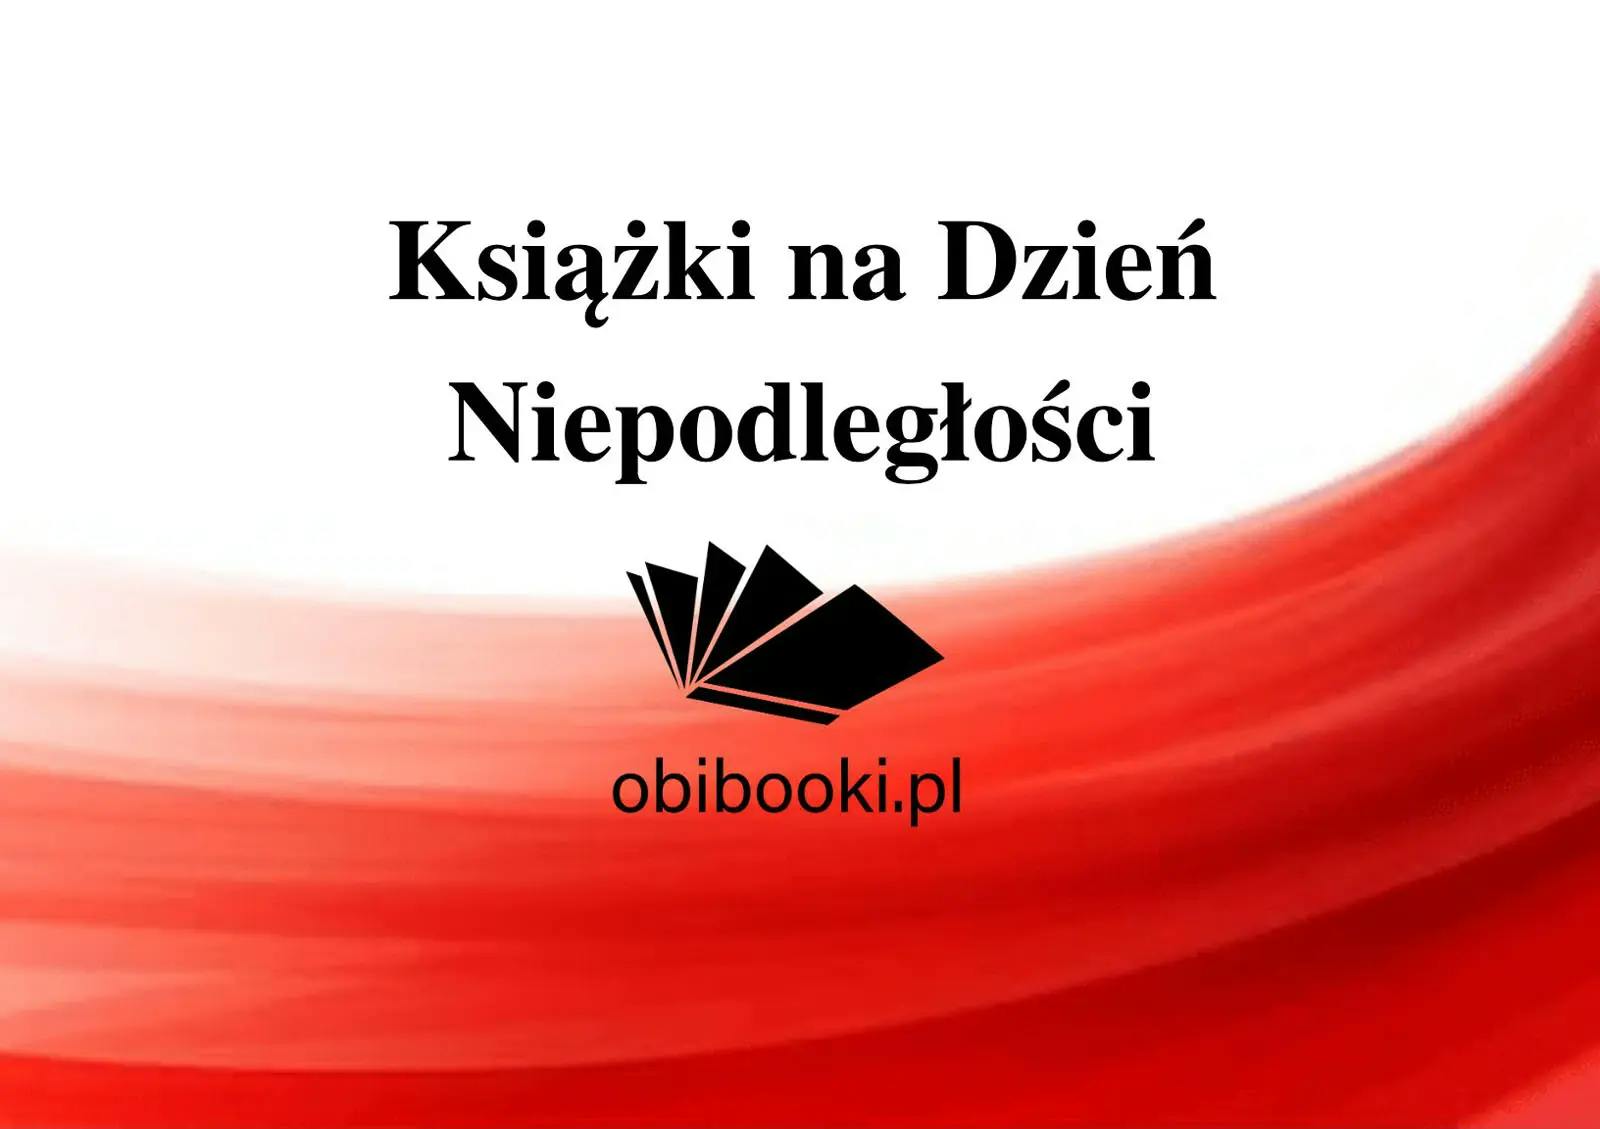 Książki dla dzieci na Dzień Niepodległości - Jak rozmawiać z dziećmi o historii? - książki z PnŚ 11 listopada 2020